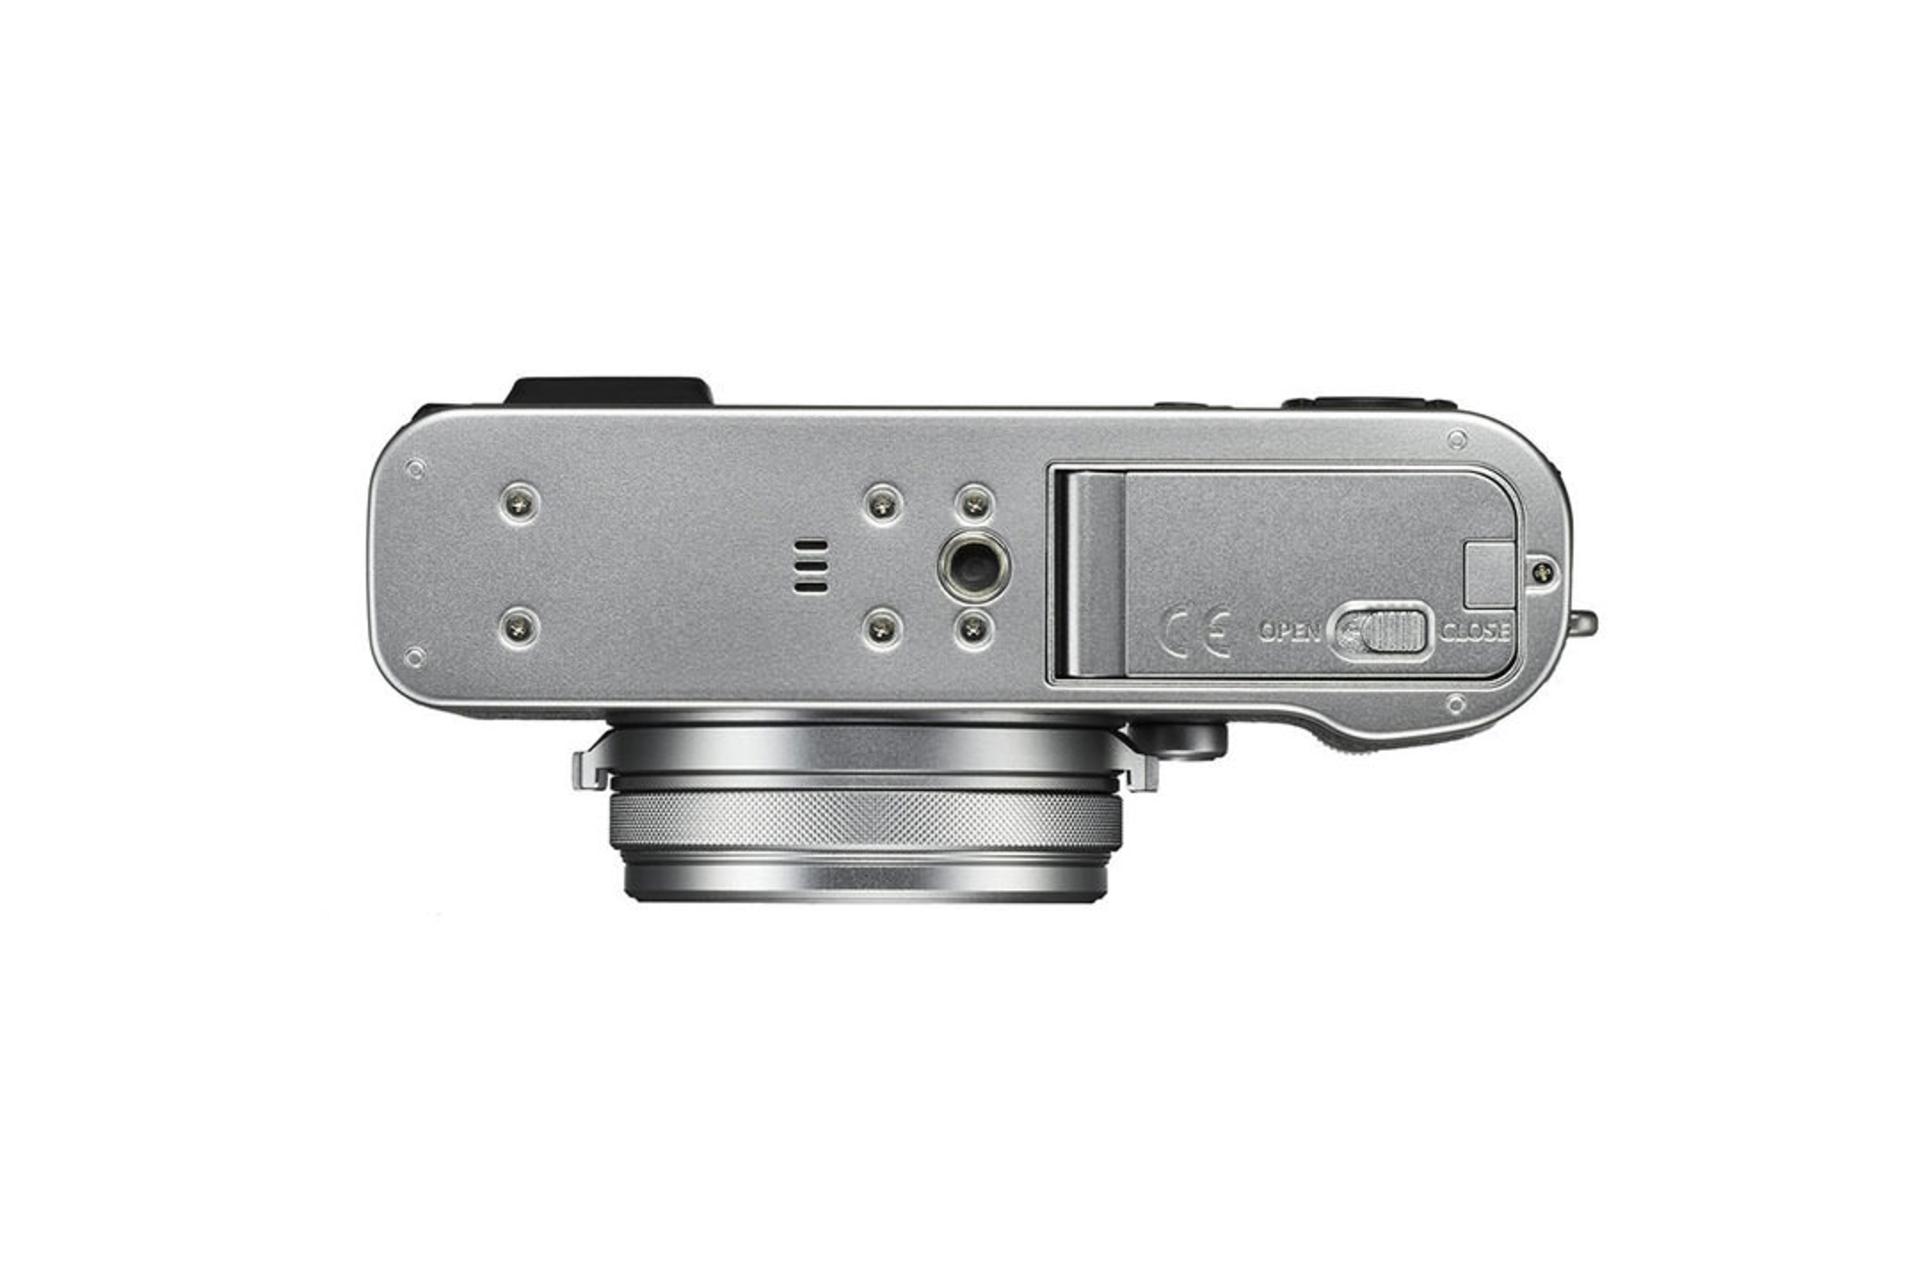 Fujifilm X100S	